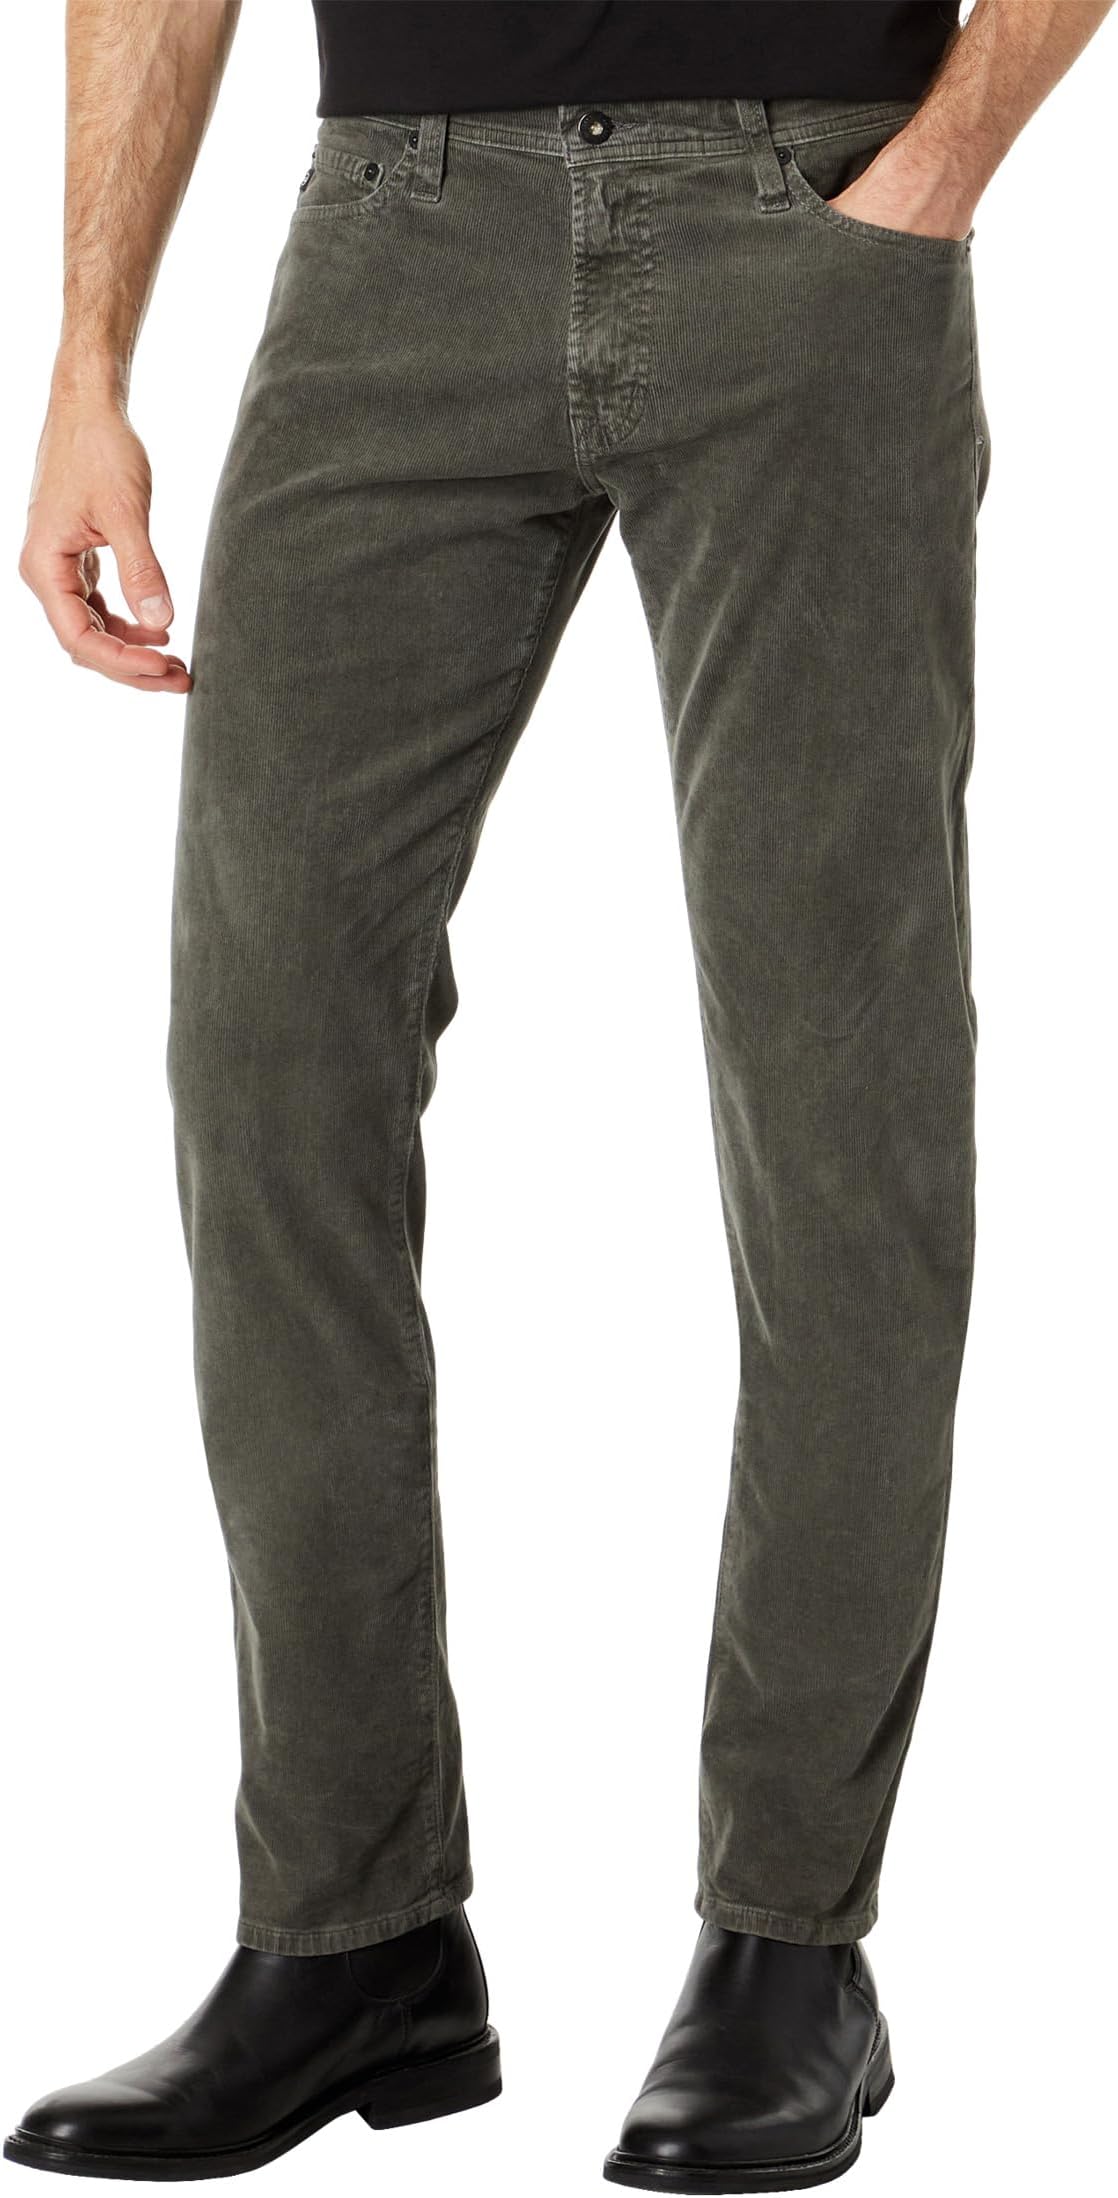 Узкие вельветовые брюки Tellis Modern AG Jeans, цвет Sulfur Anthracite